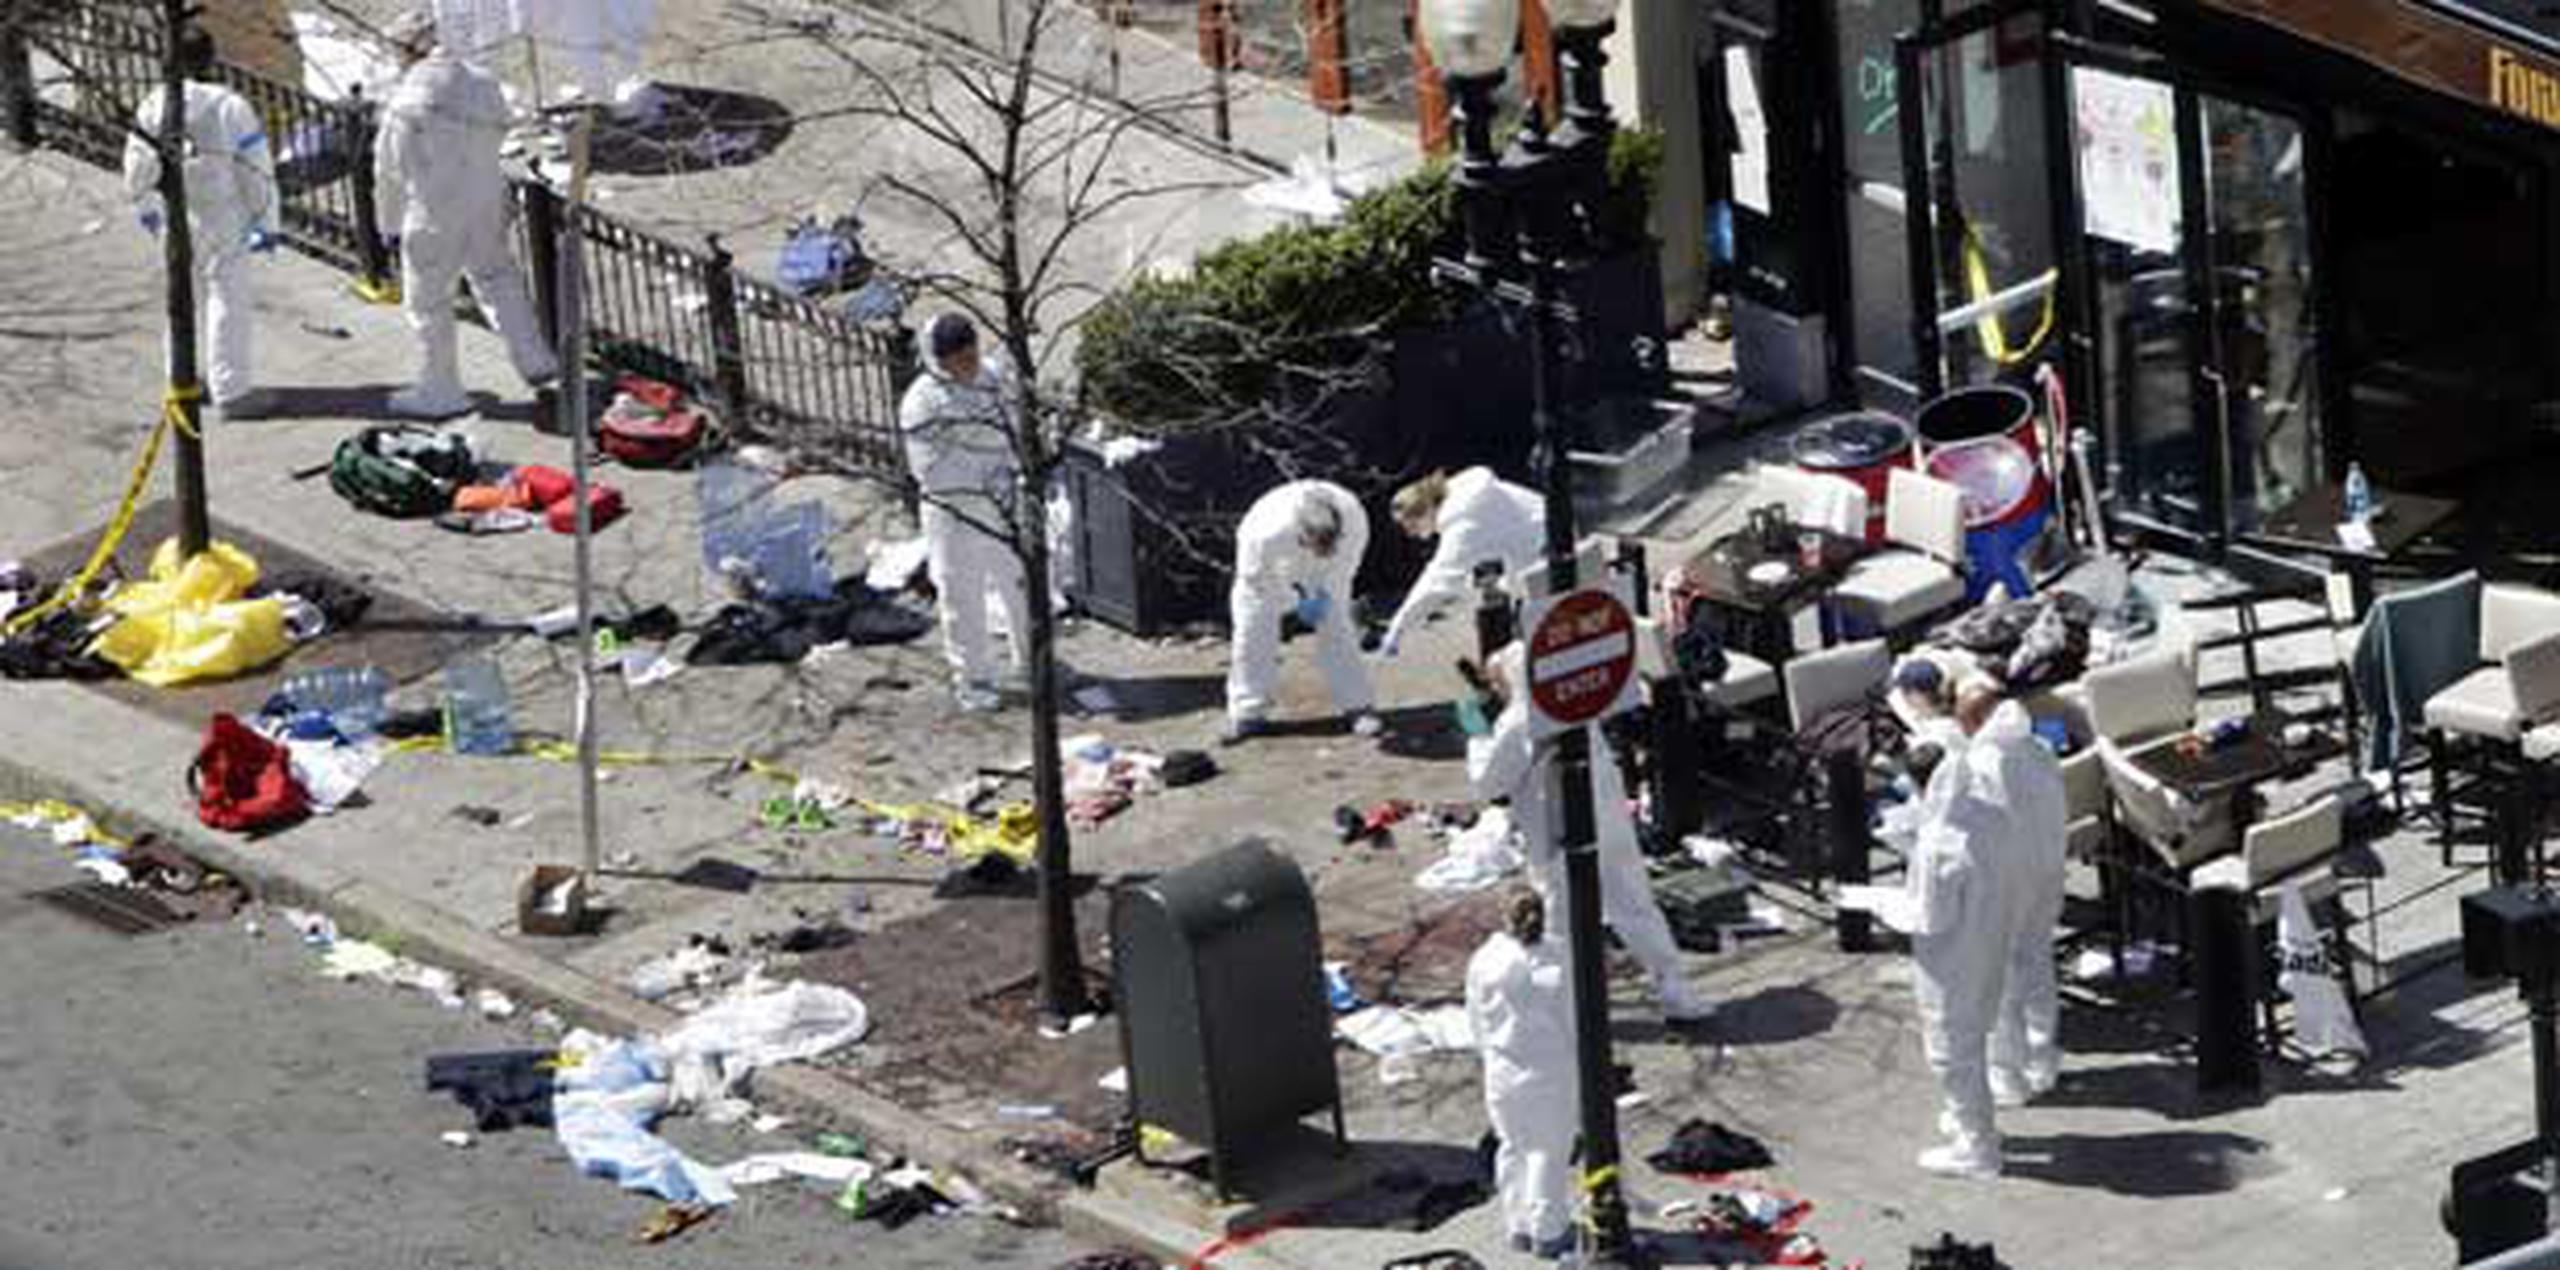 Investigadores examinan el área donde estalló una de las bombas en Boston. (AP /Elise Amendola)

